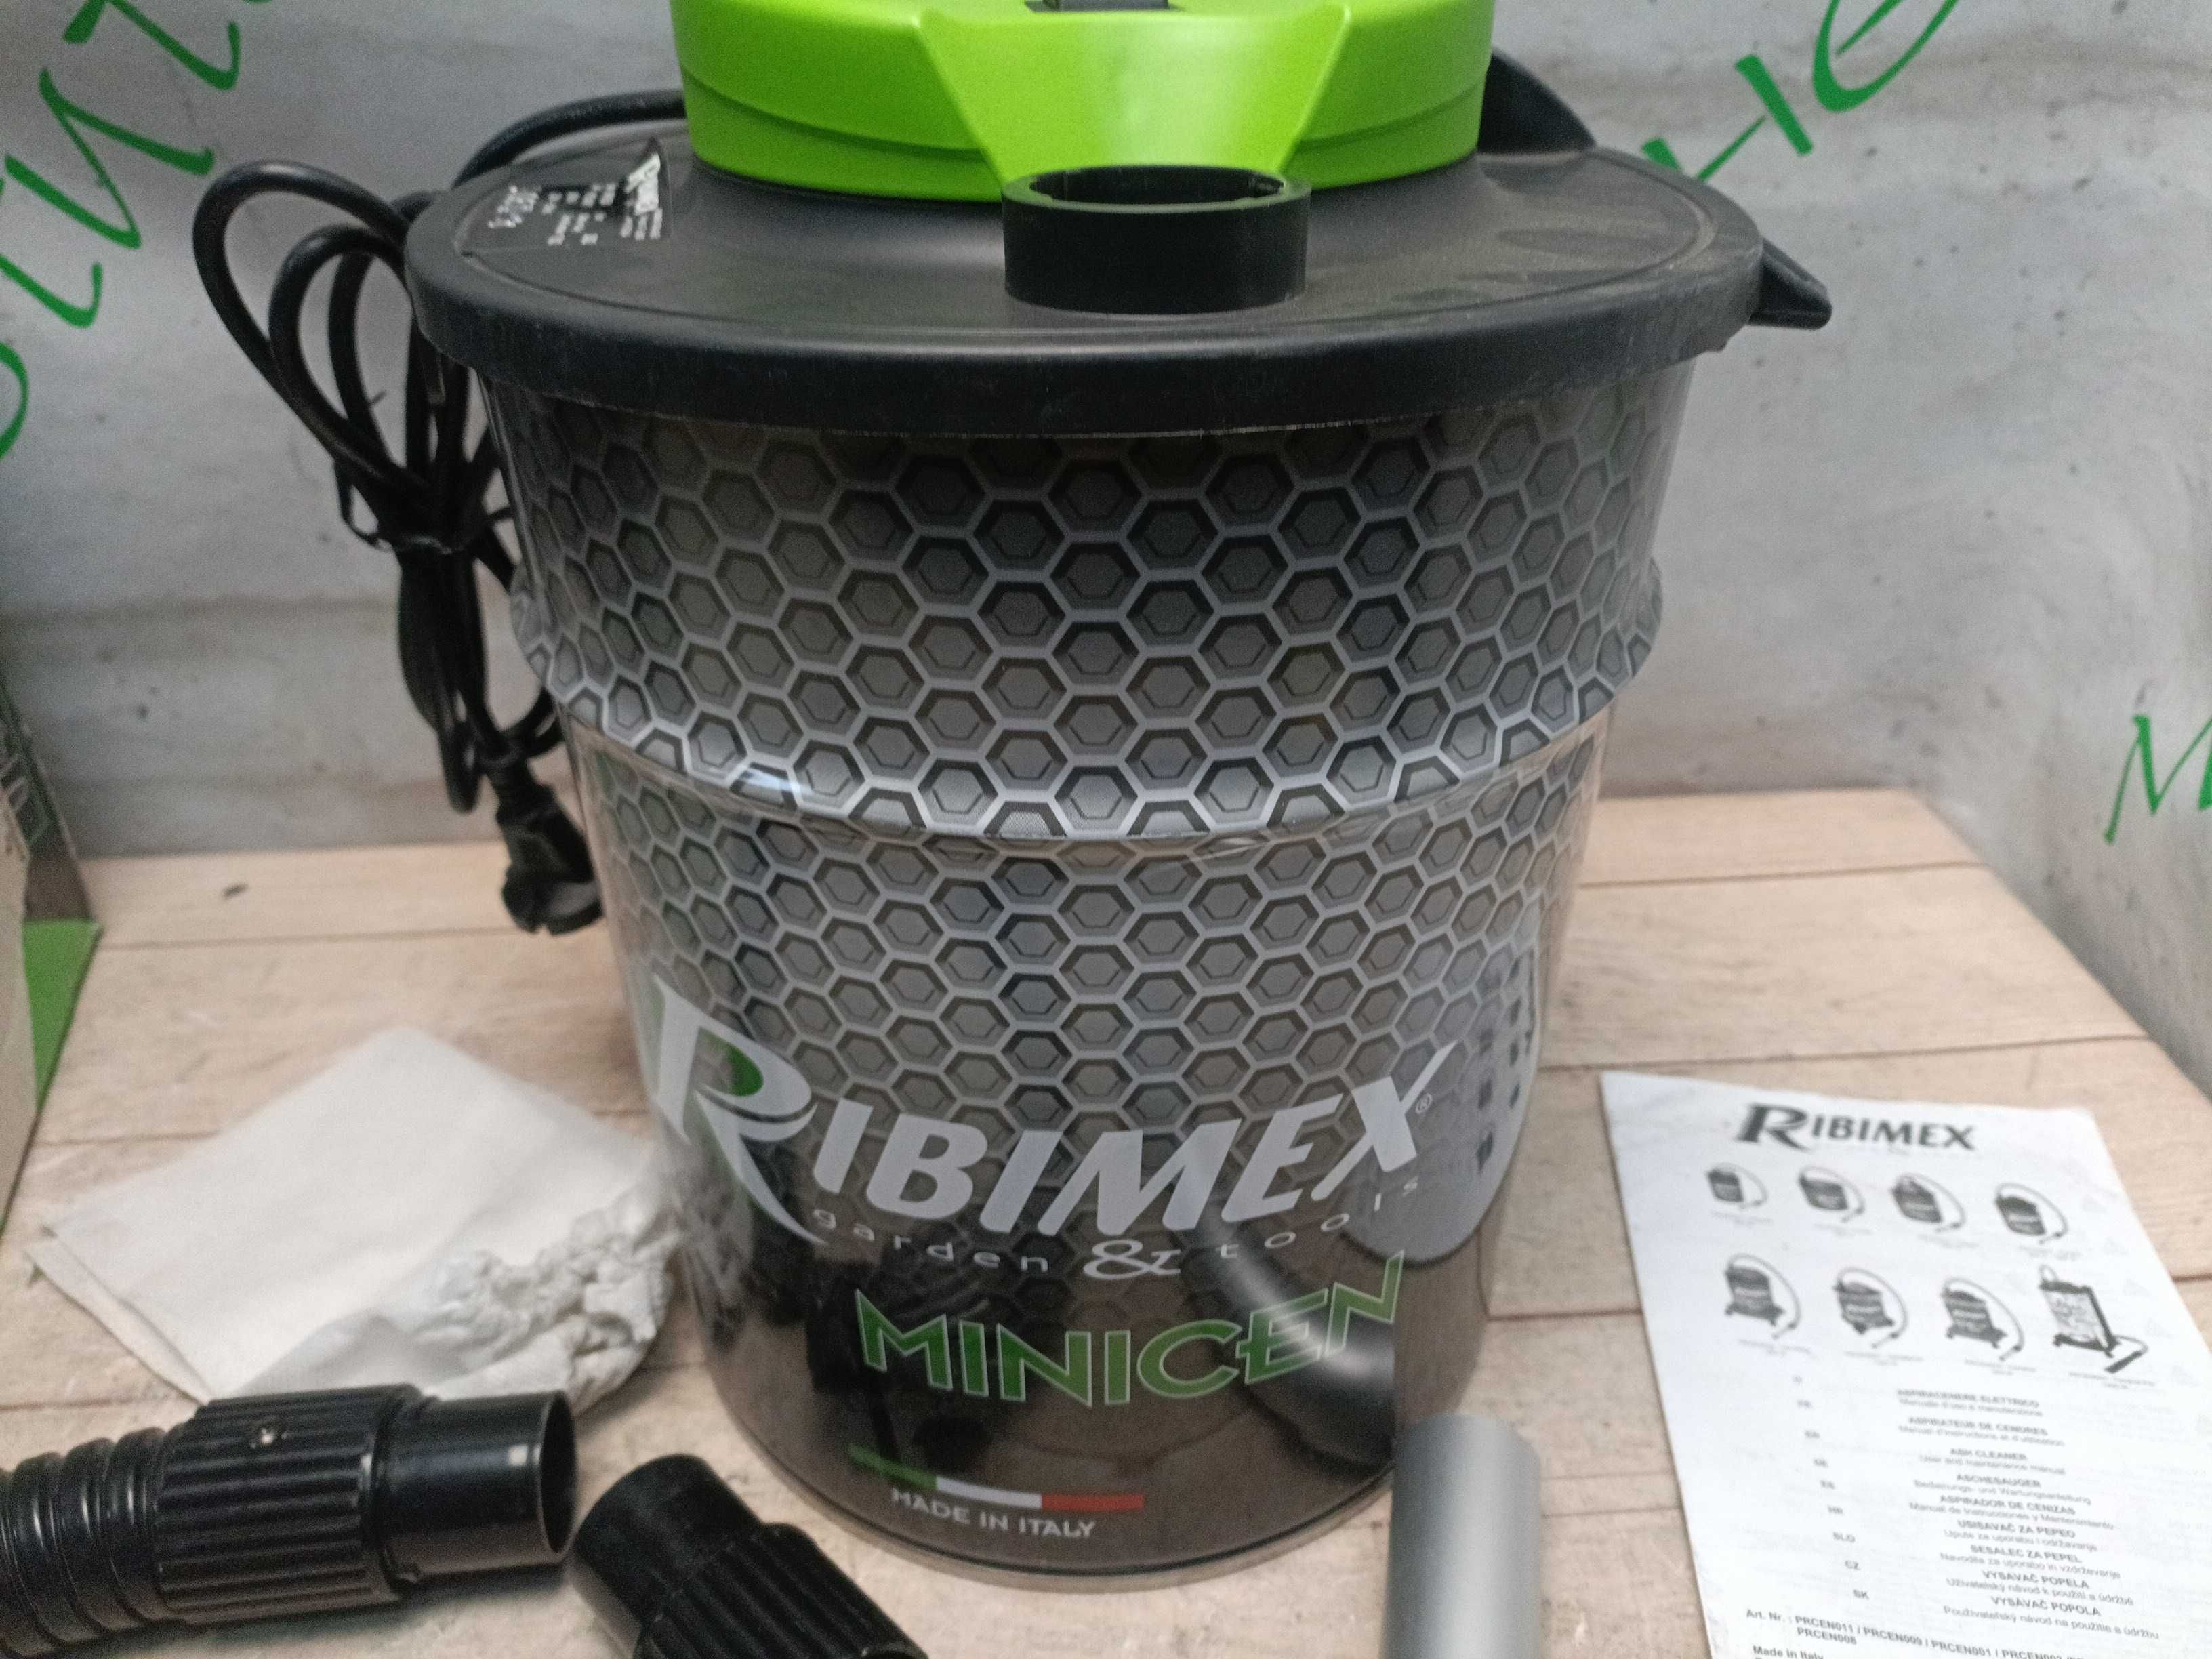 Ribimex пылесос для уборки золы, каминный пылесос, 10л, 800Вт